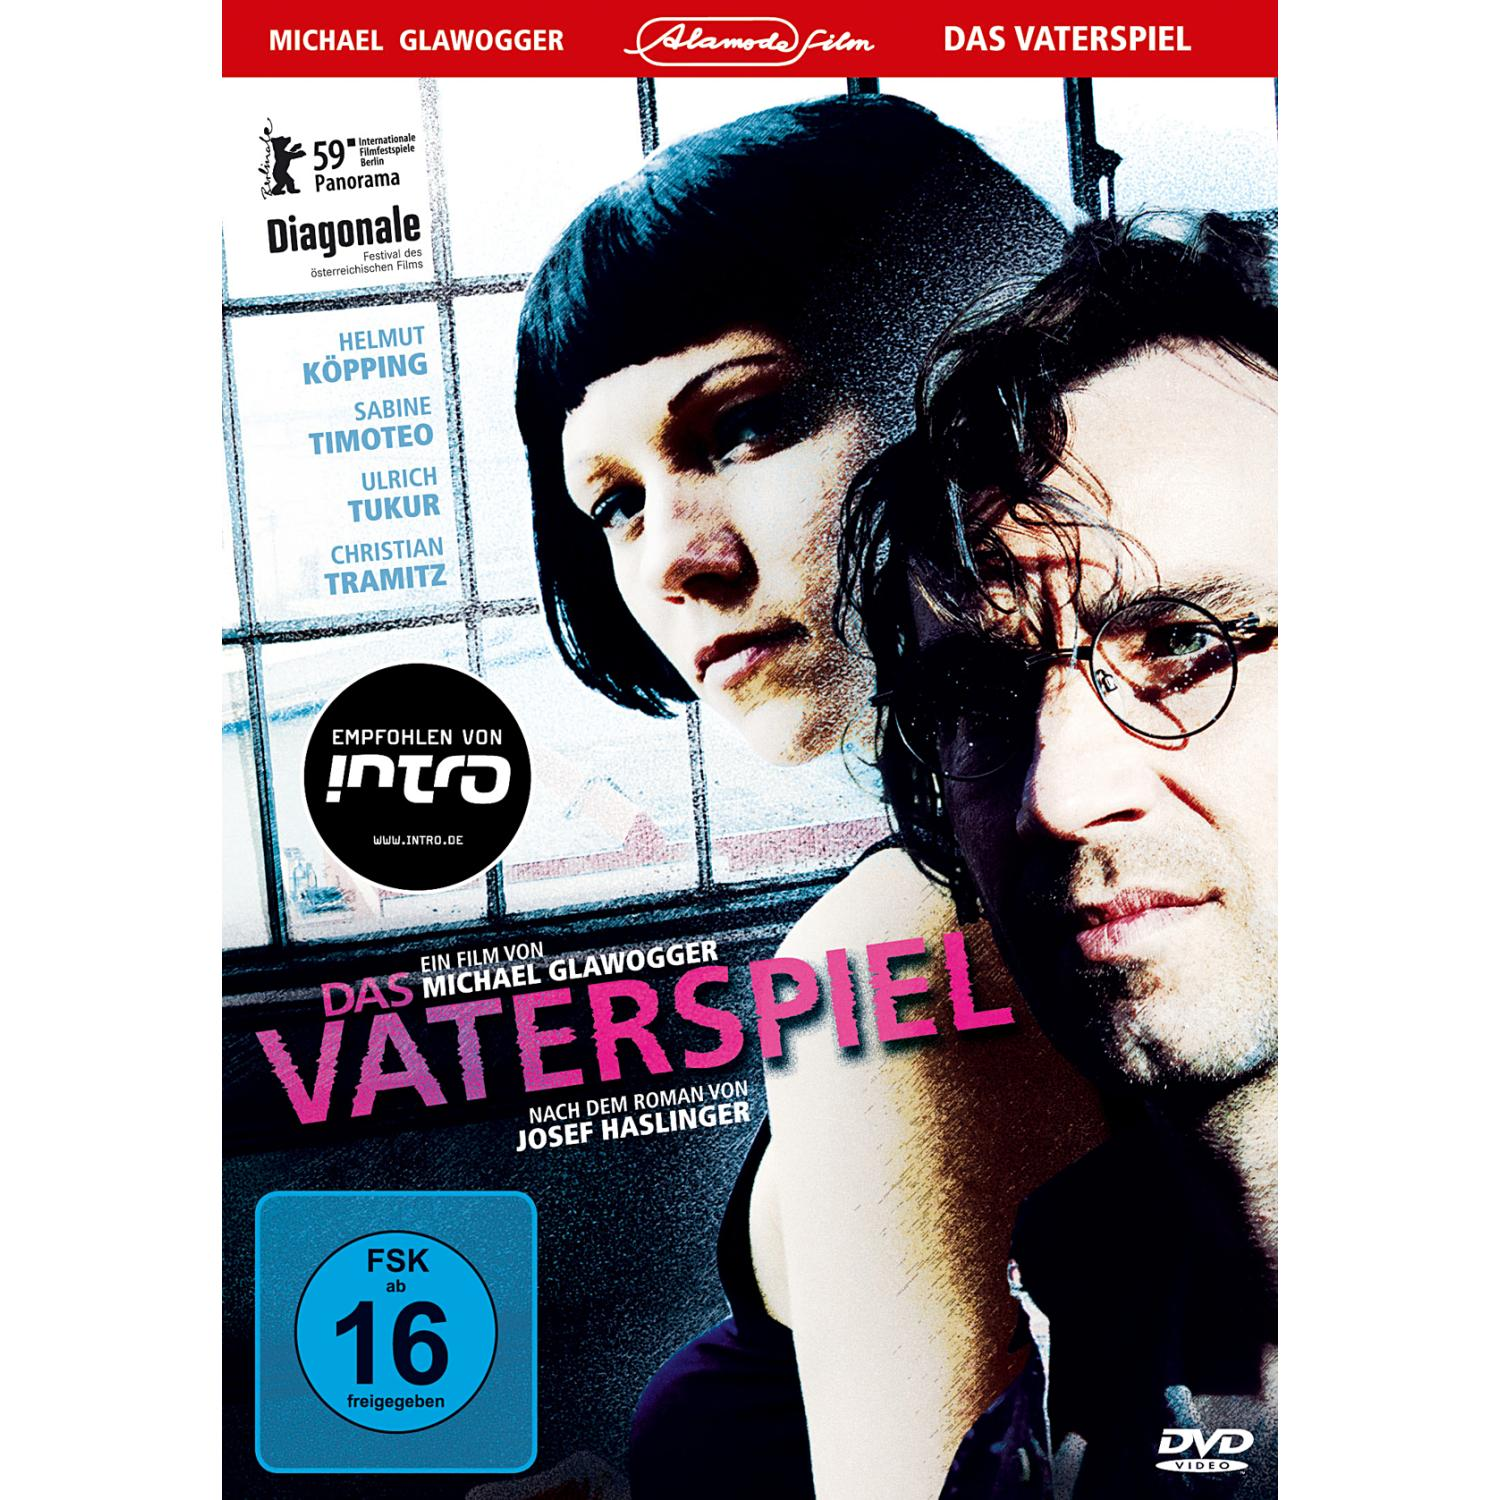 VATERSPIEL DVD DAS